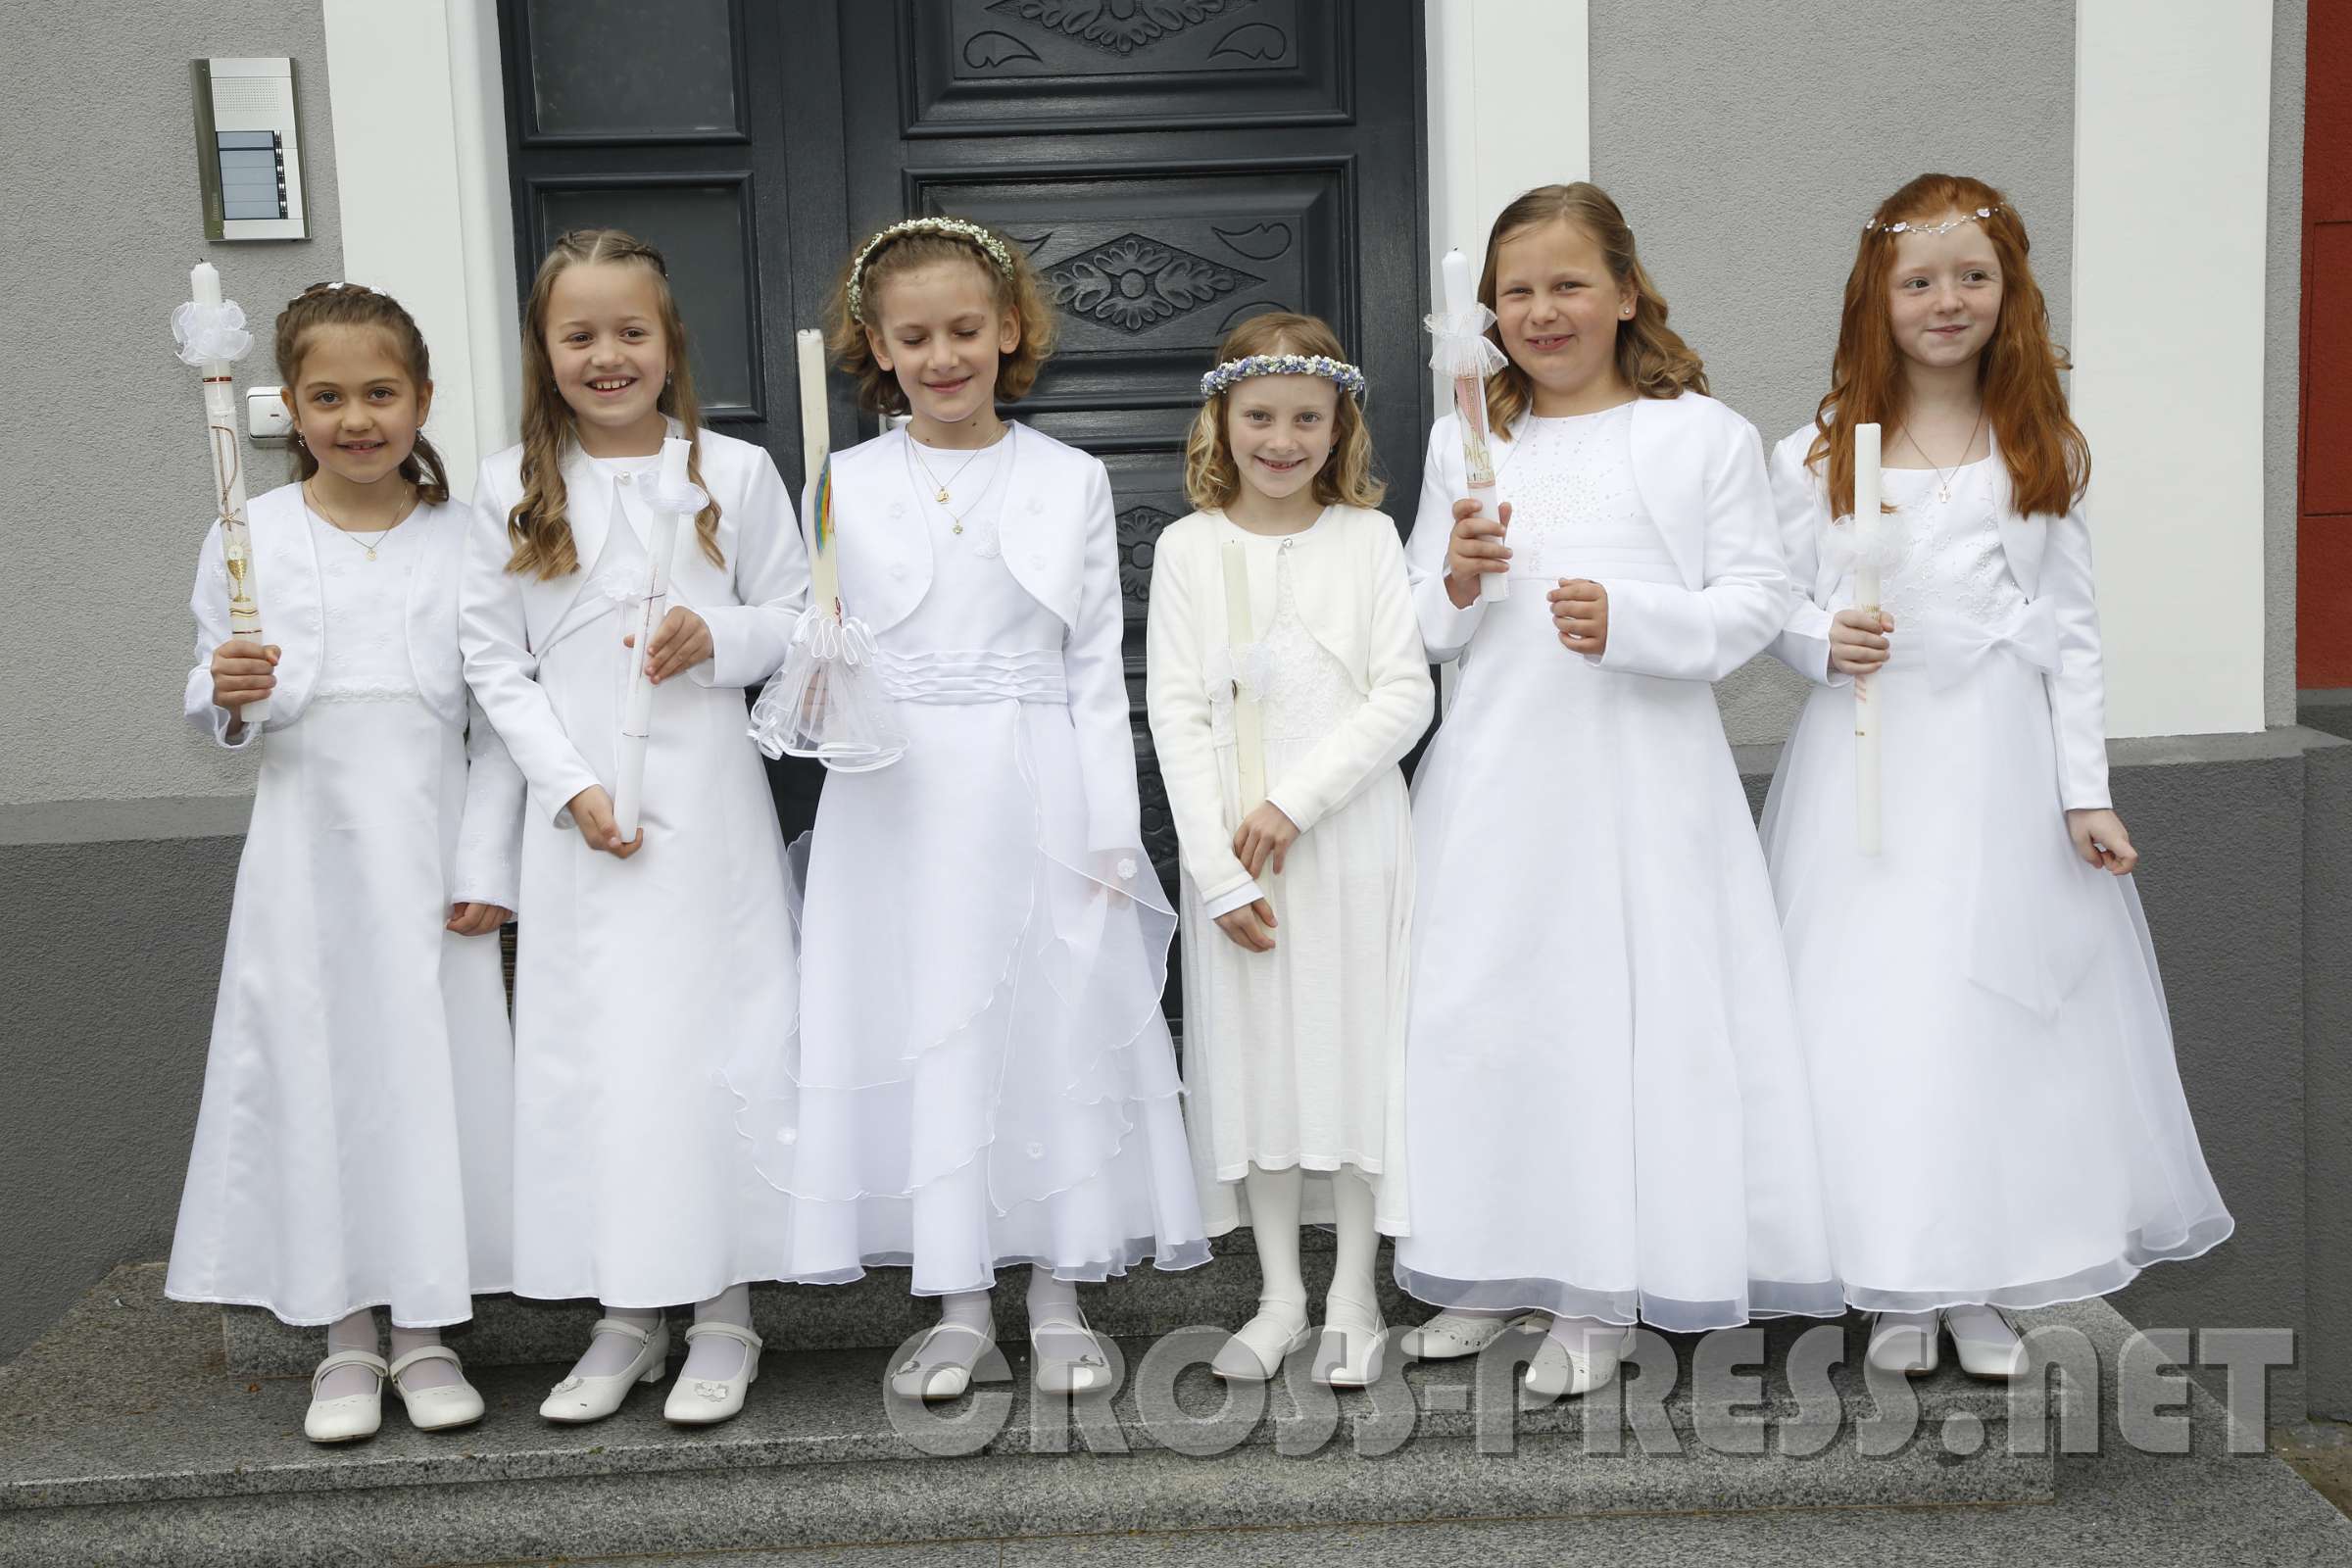 2016.05.05_09.11.24.JPG - Sechs Mädchen auf dem Weg zur Erstkommunion.